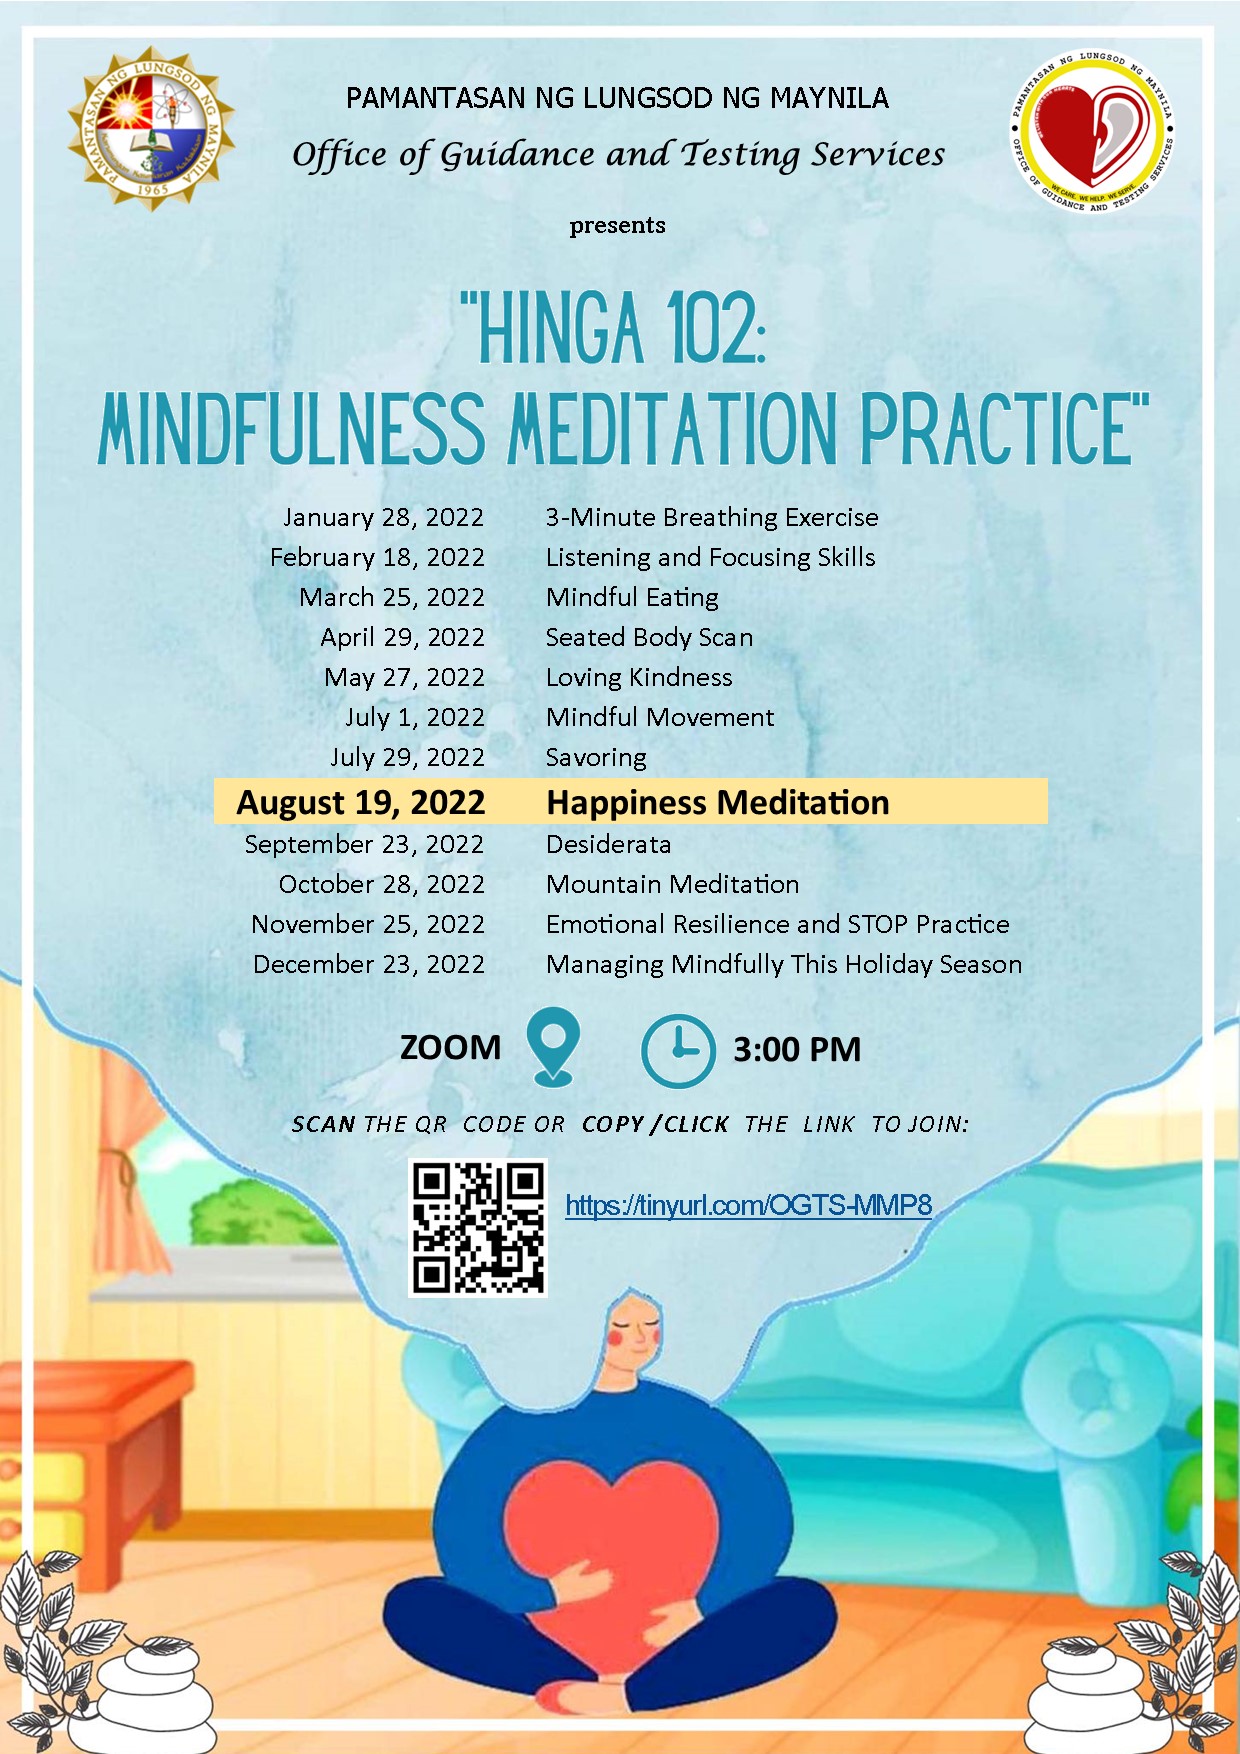 Join Hinga 102 Happiness meditation webinar on Aug. 19, 3 PM